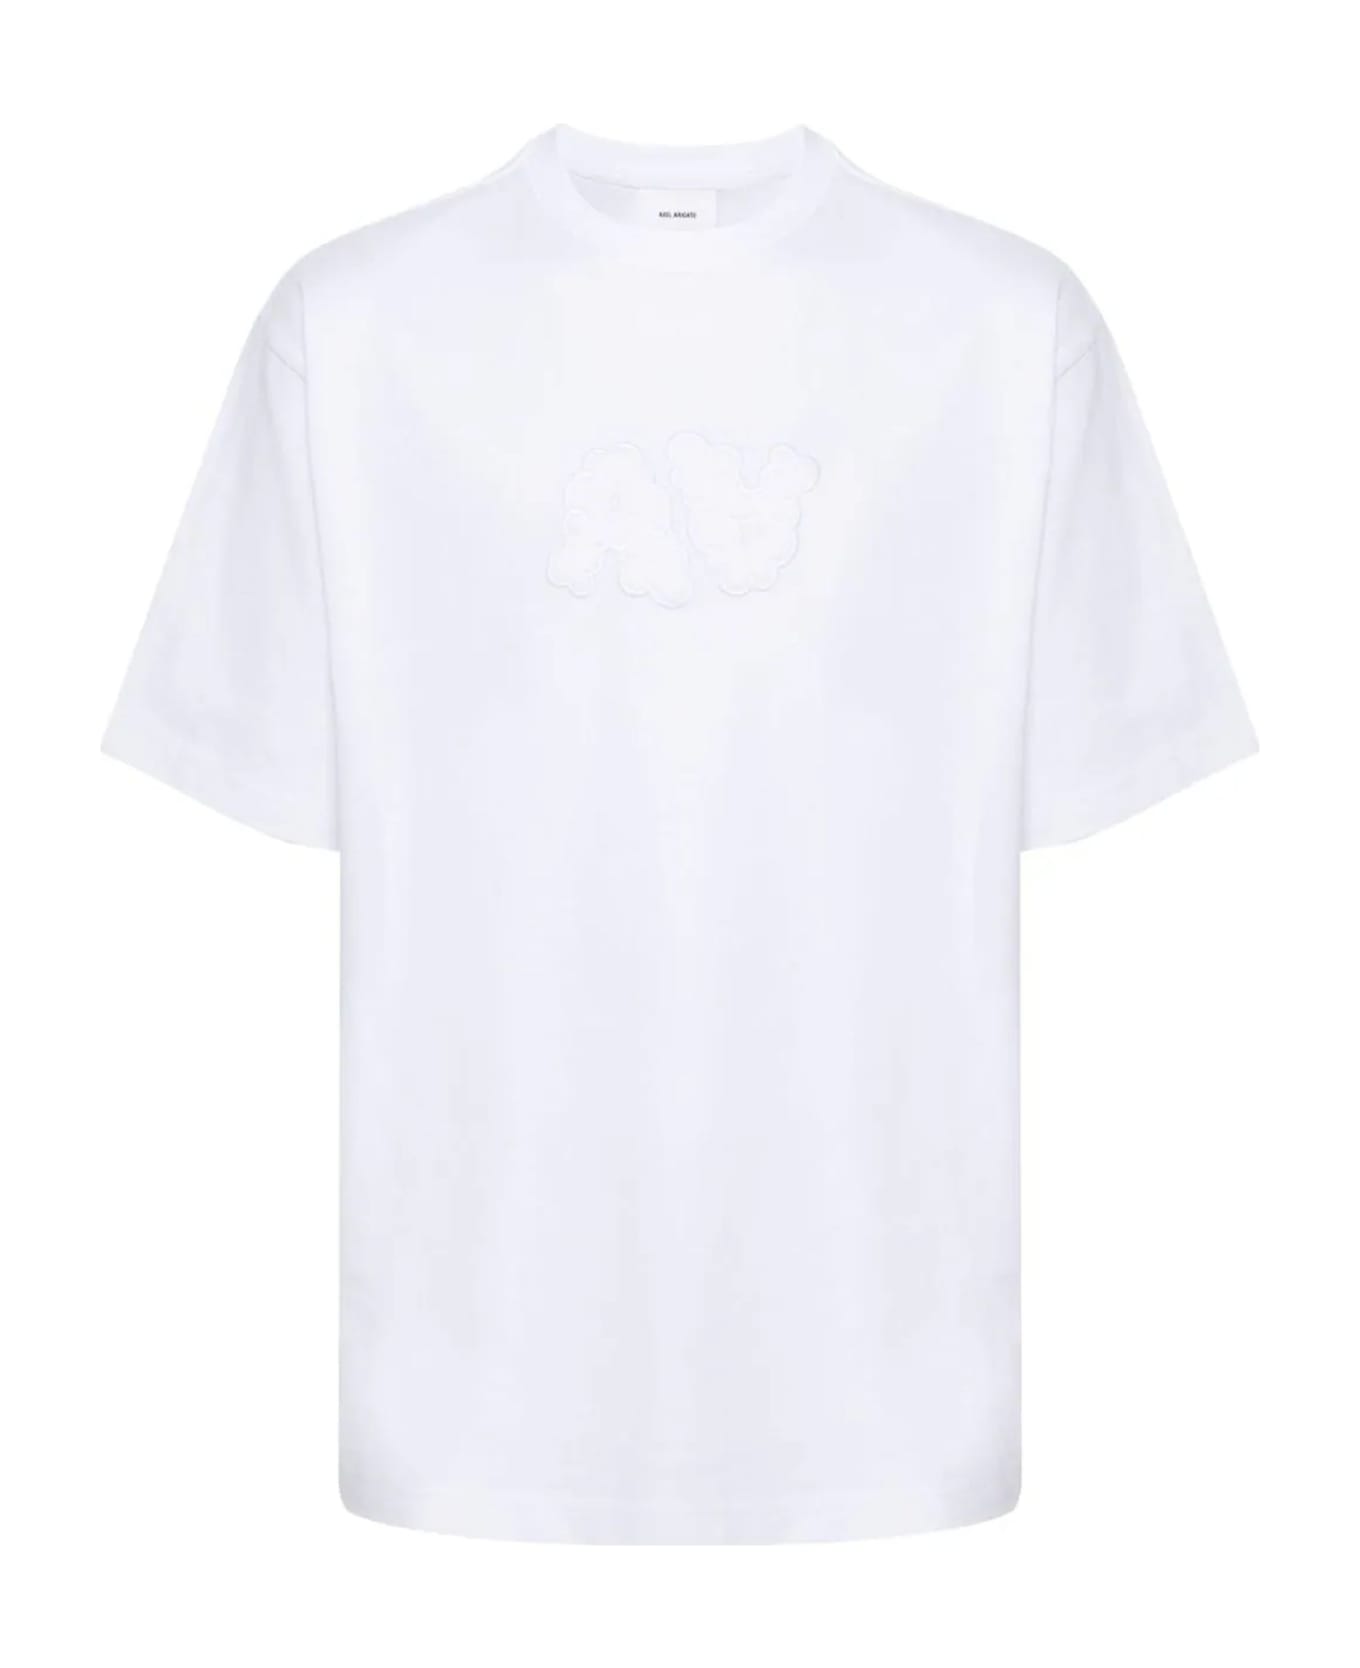 Axel Arigato White Cotton T-shirt - White